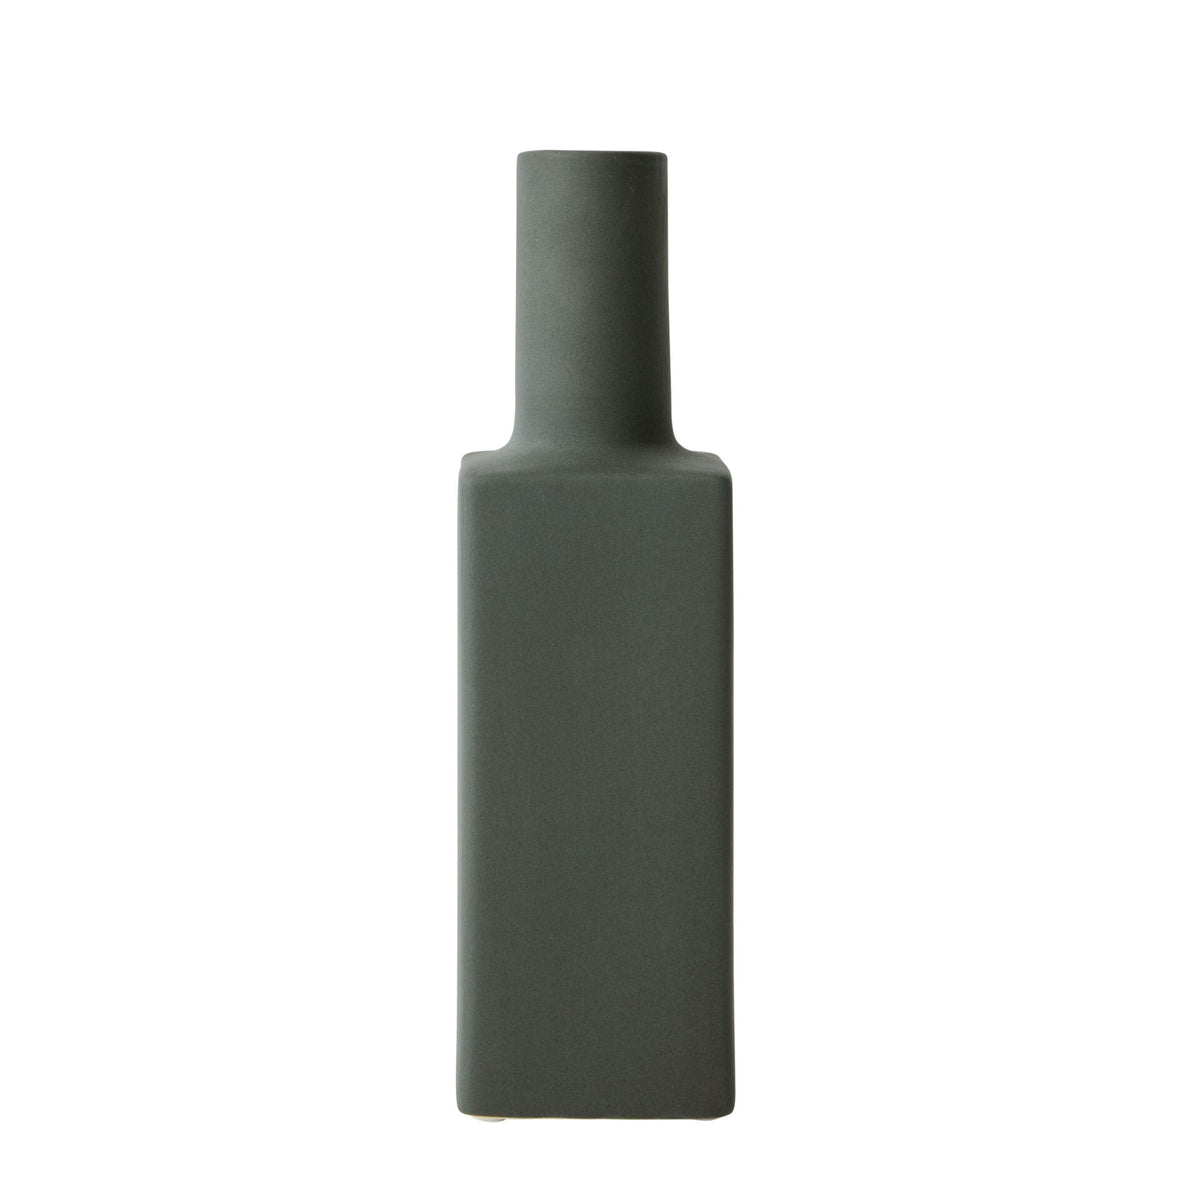 Curio Ceramic Vase in Emerald - 25.5cm - Notbrand